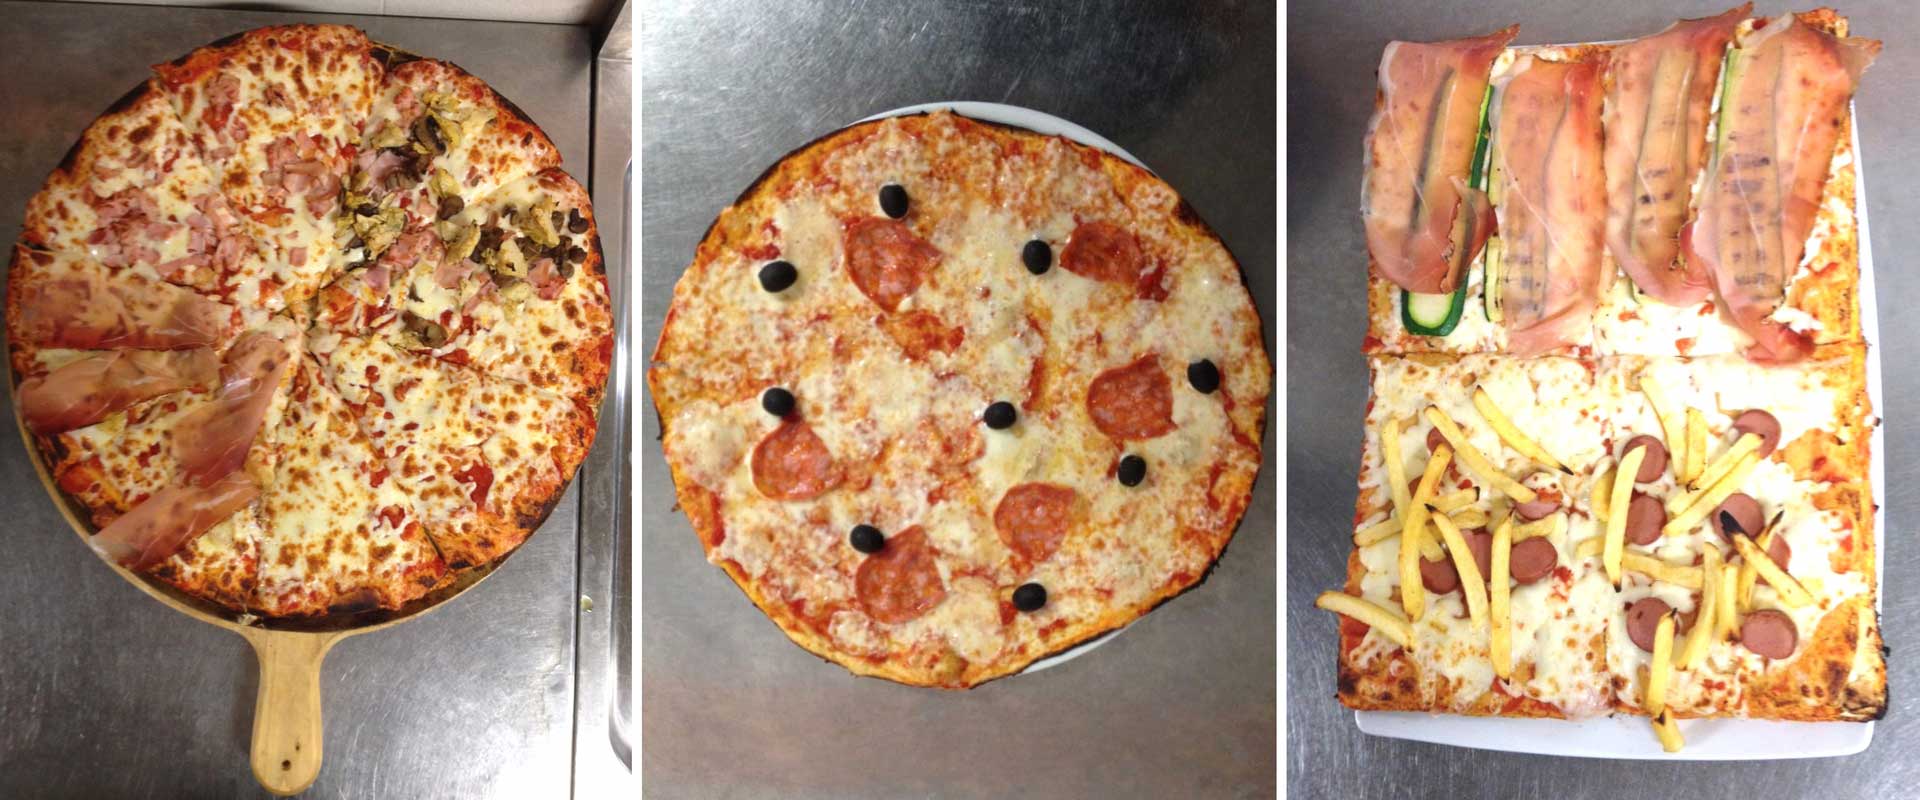 Pizza Senza Glutine e Pizza Ventilata